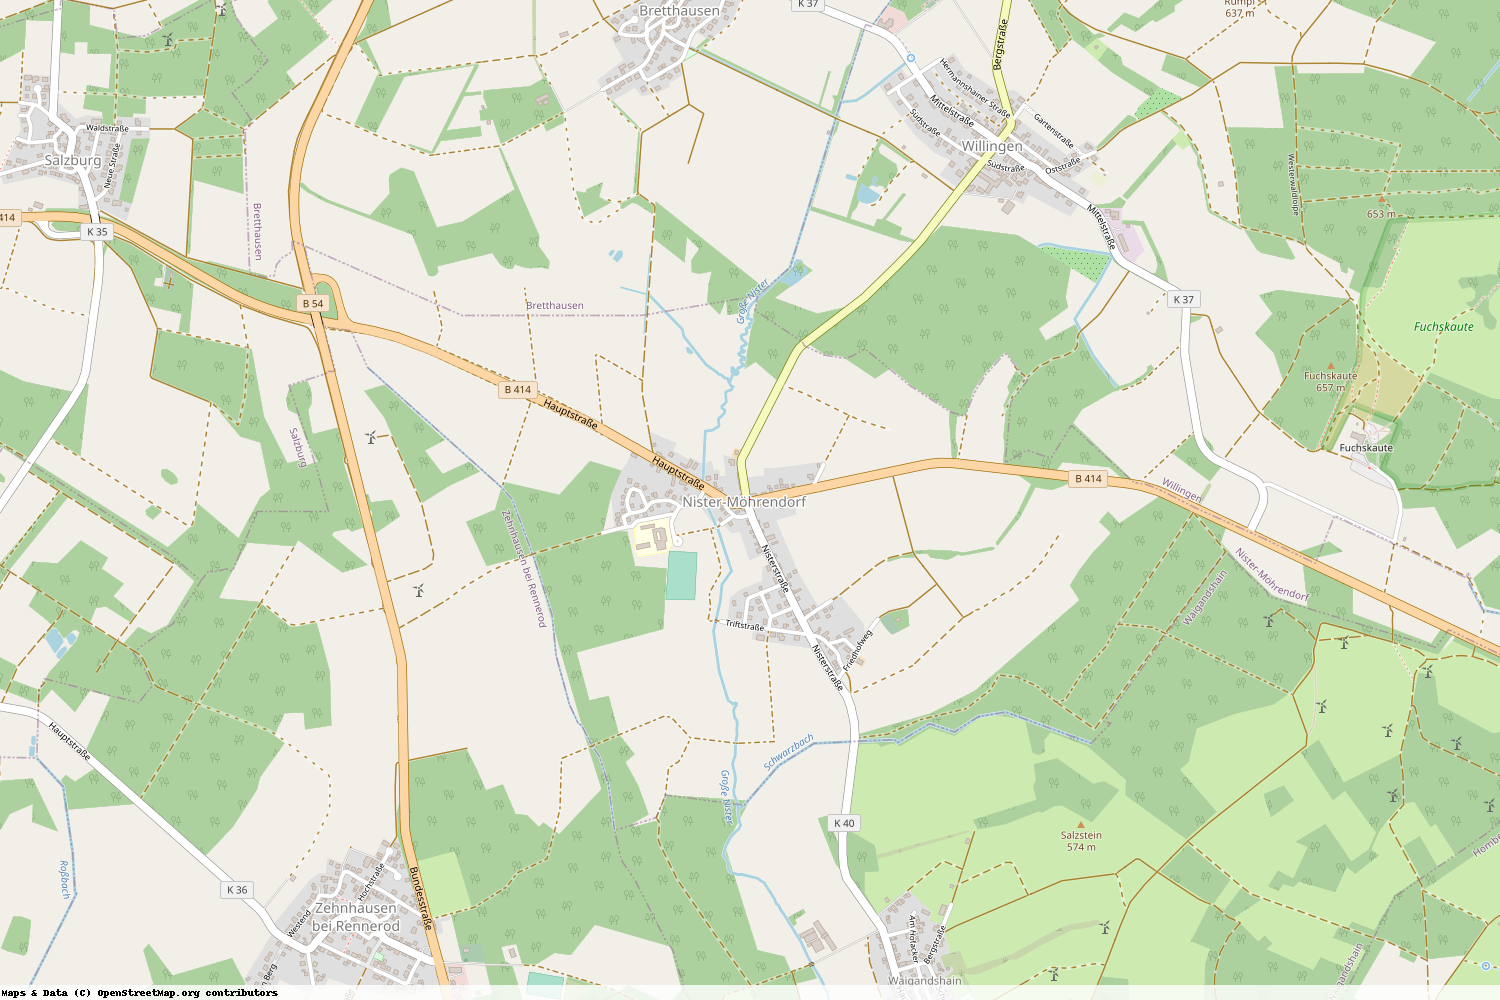 Ist gerade Stromausfall in Rheinland-Pfalz - Westerwaldkreis - Nister-Möhrendorf?